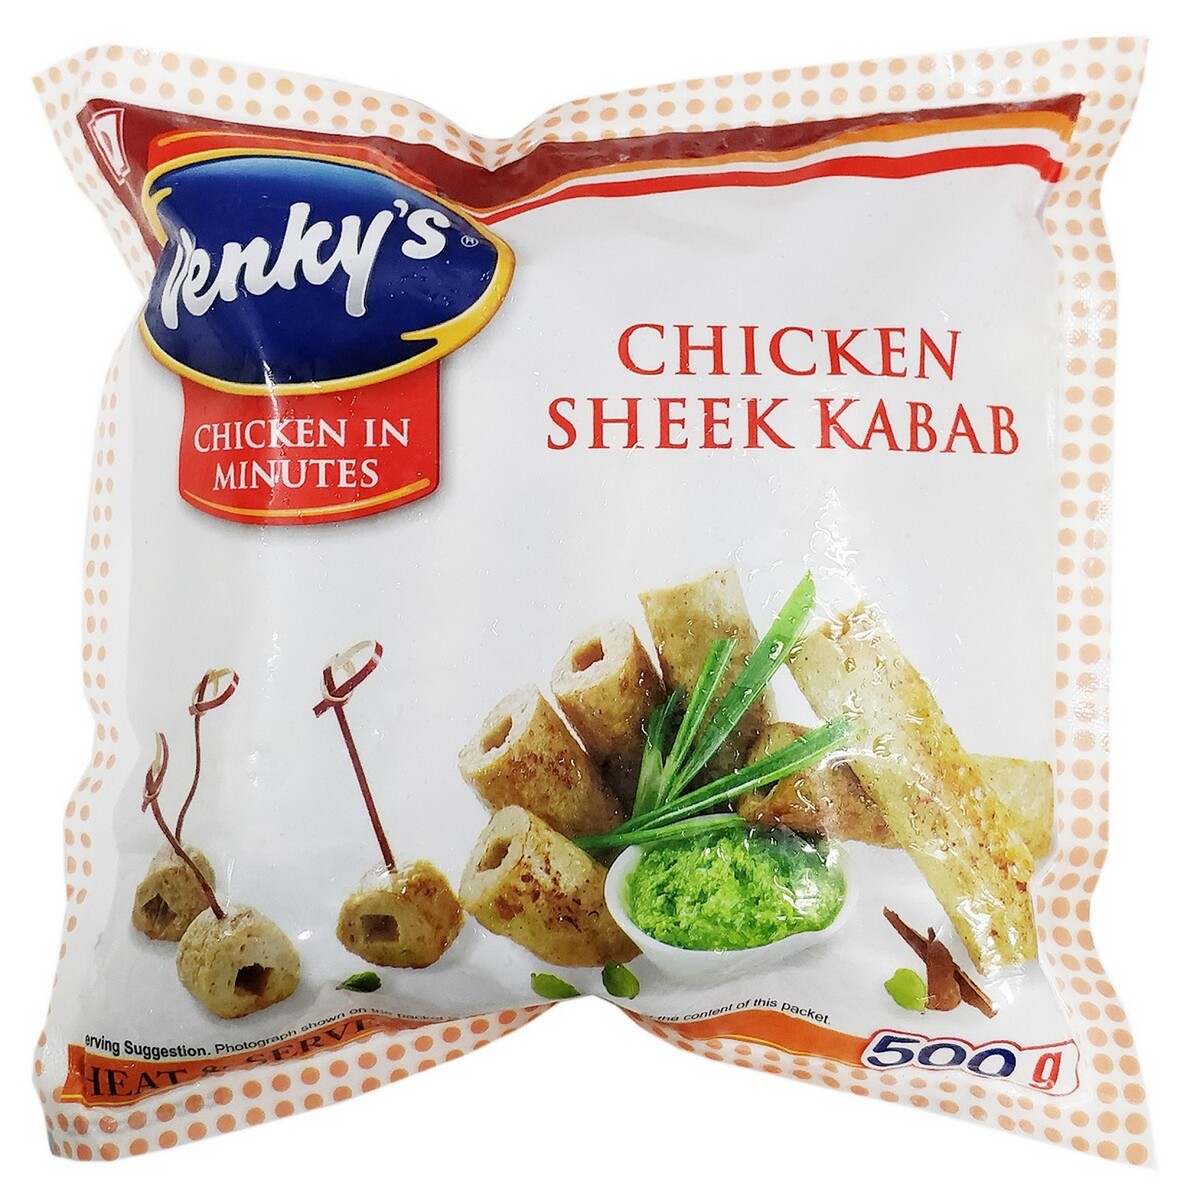 Venky's Chicken Sheek Kabab 500g